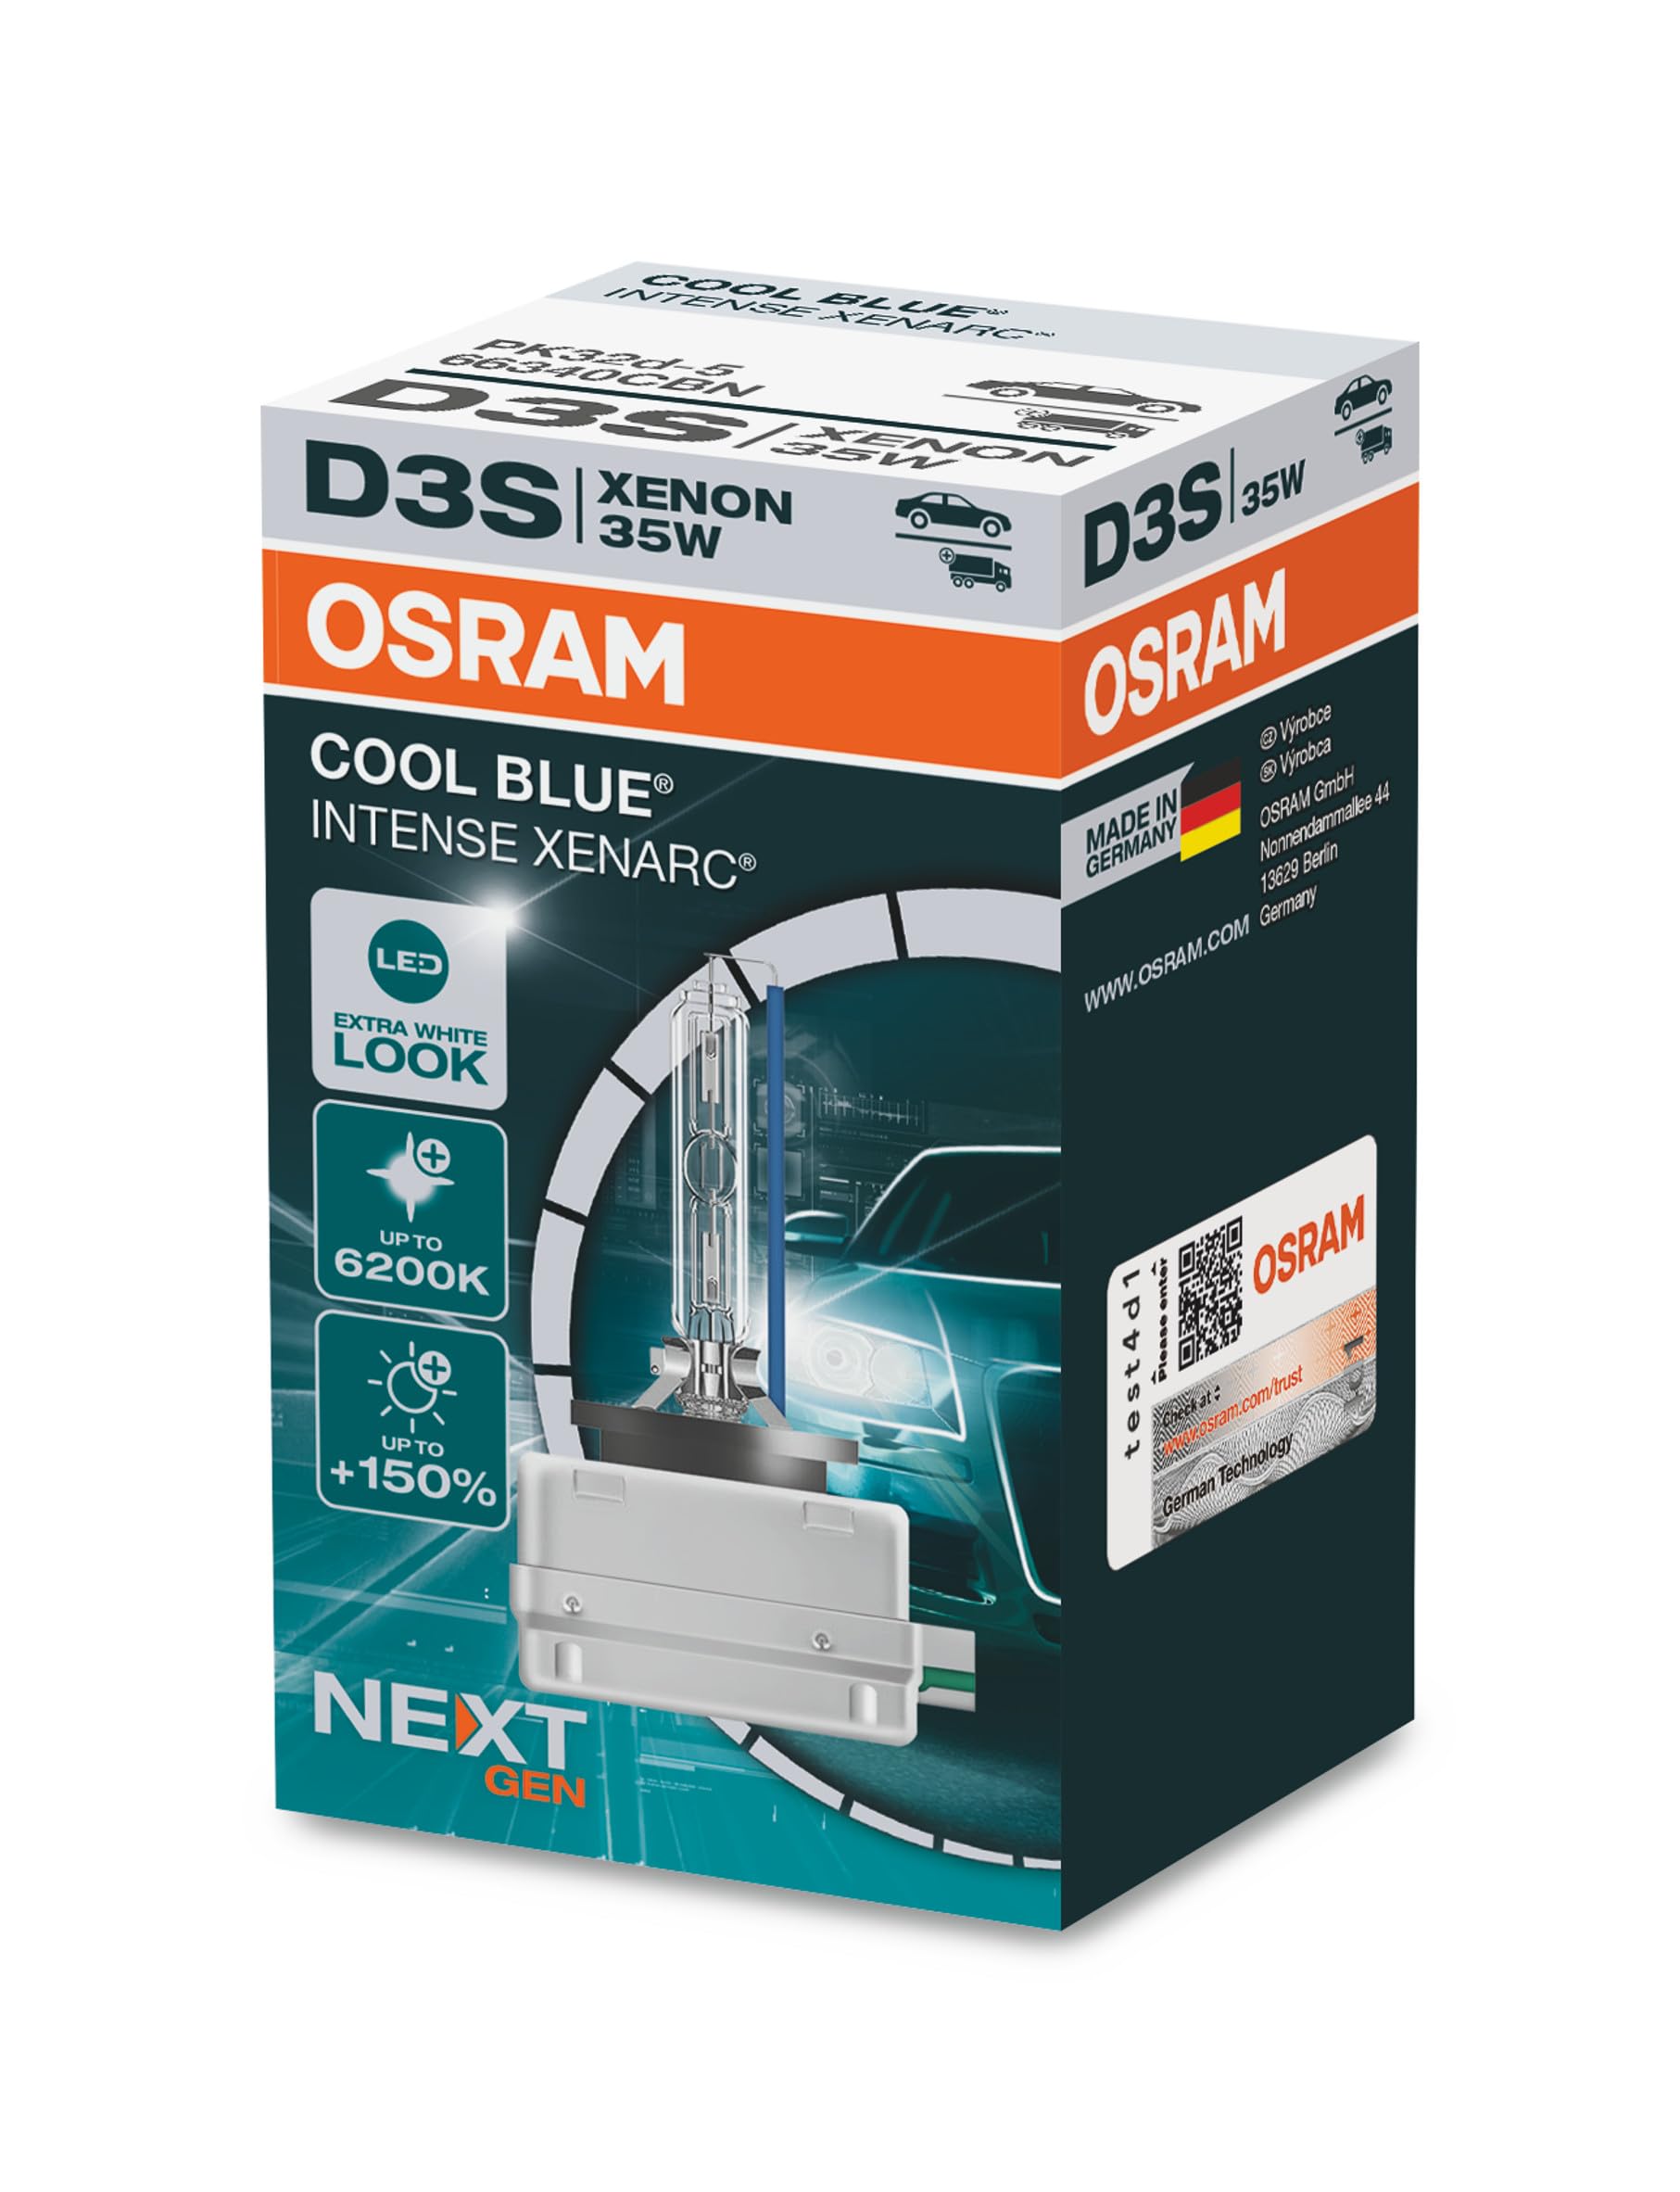 OSRAM XENARC COOL BLUE INTENSE D3S, 150% mehr Helligkeit, bis zu 6.200K, Xenon-Scheinwerferlampe, LED Look, Faltschachtel (1 Lampe) von Osram